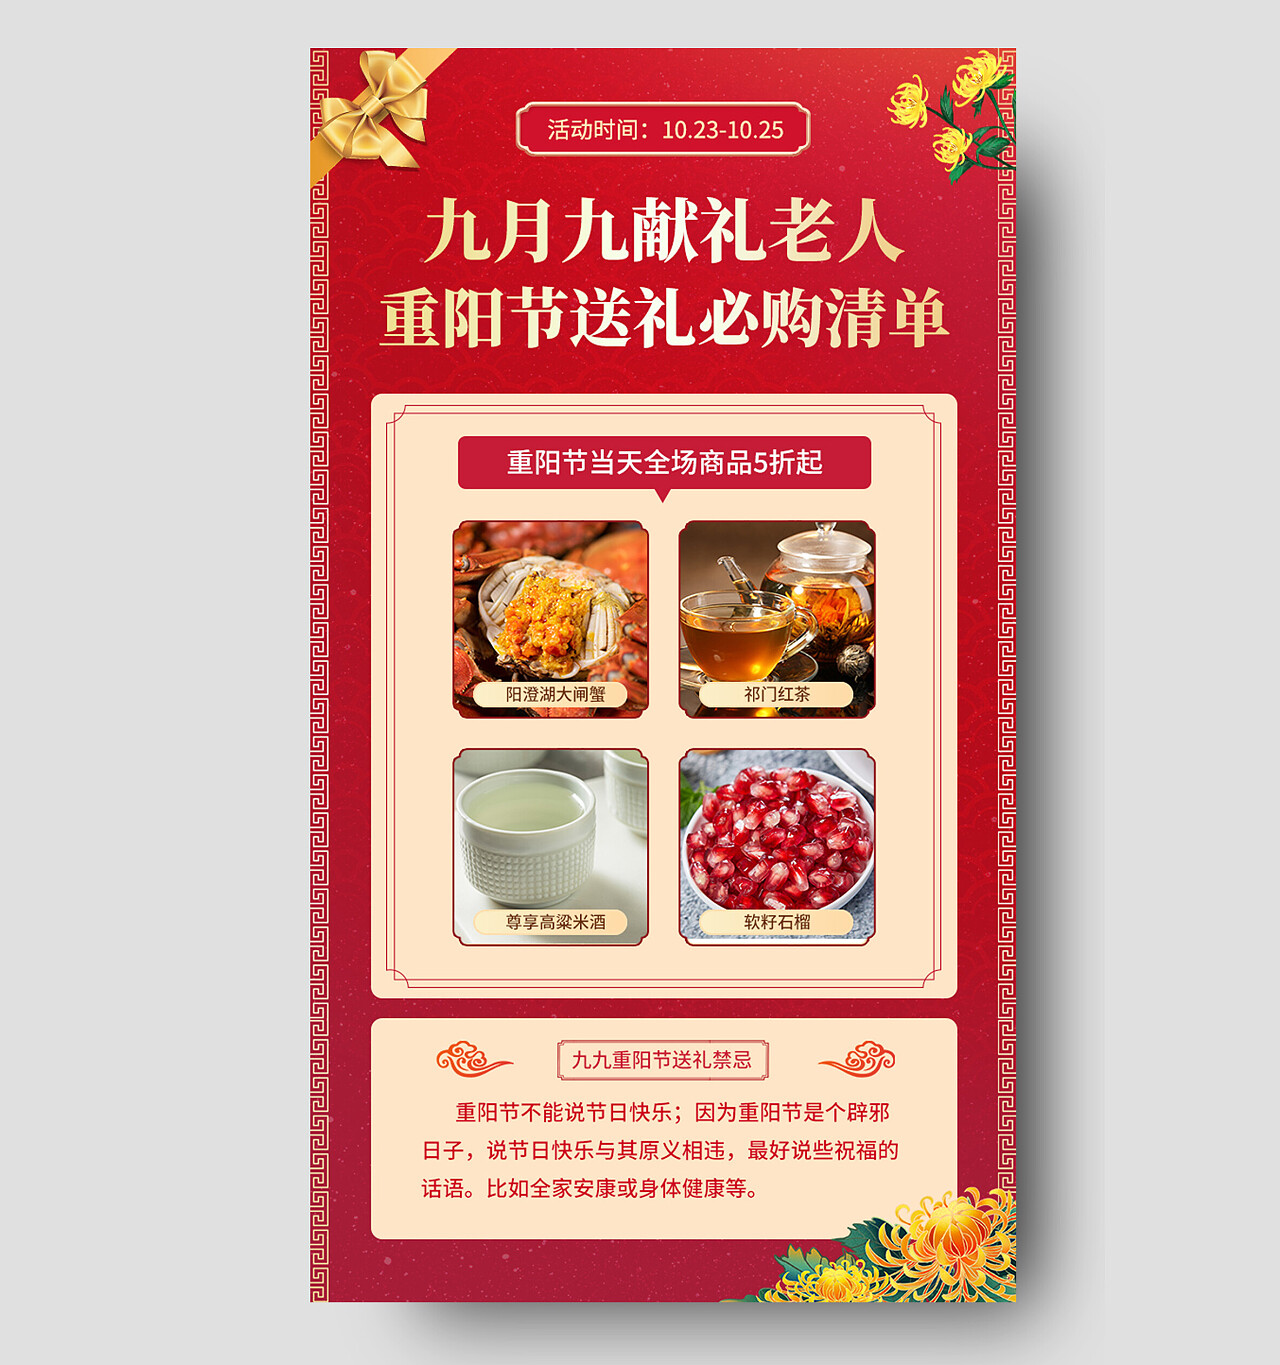 红色喜庆九月九献礼老人重阳节活动节日手机文案海报